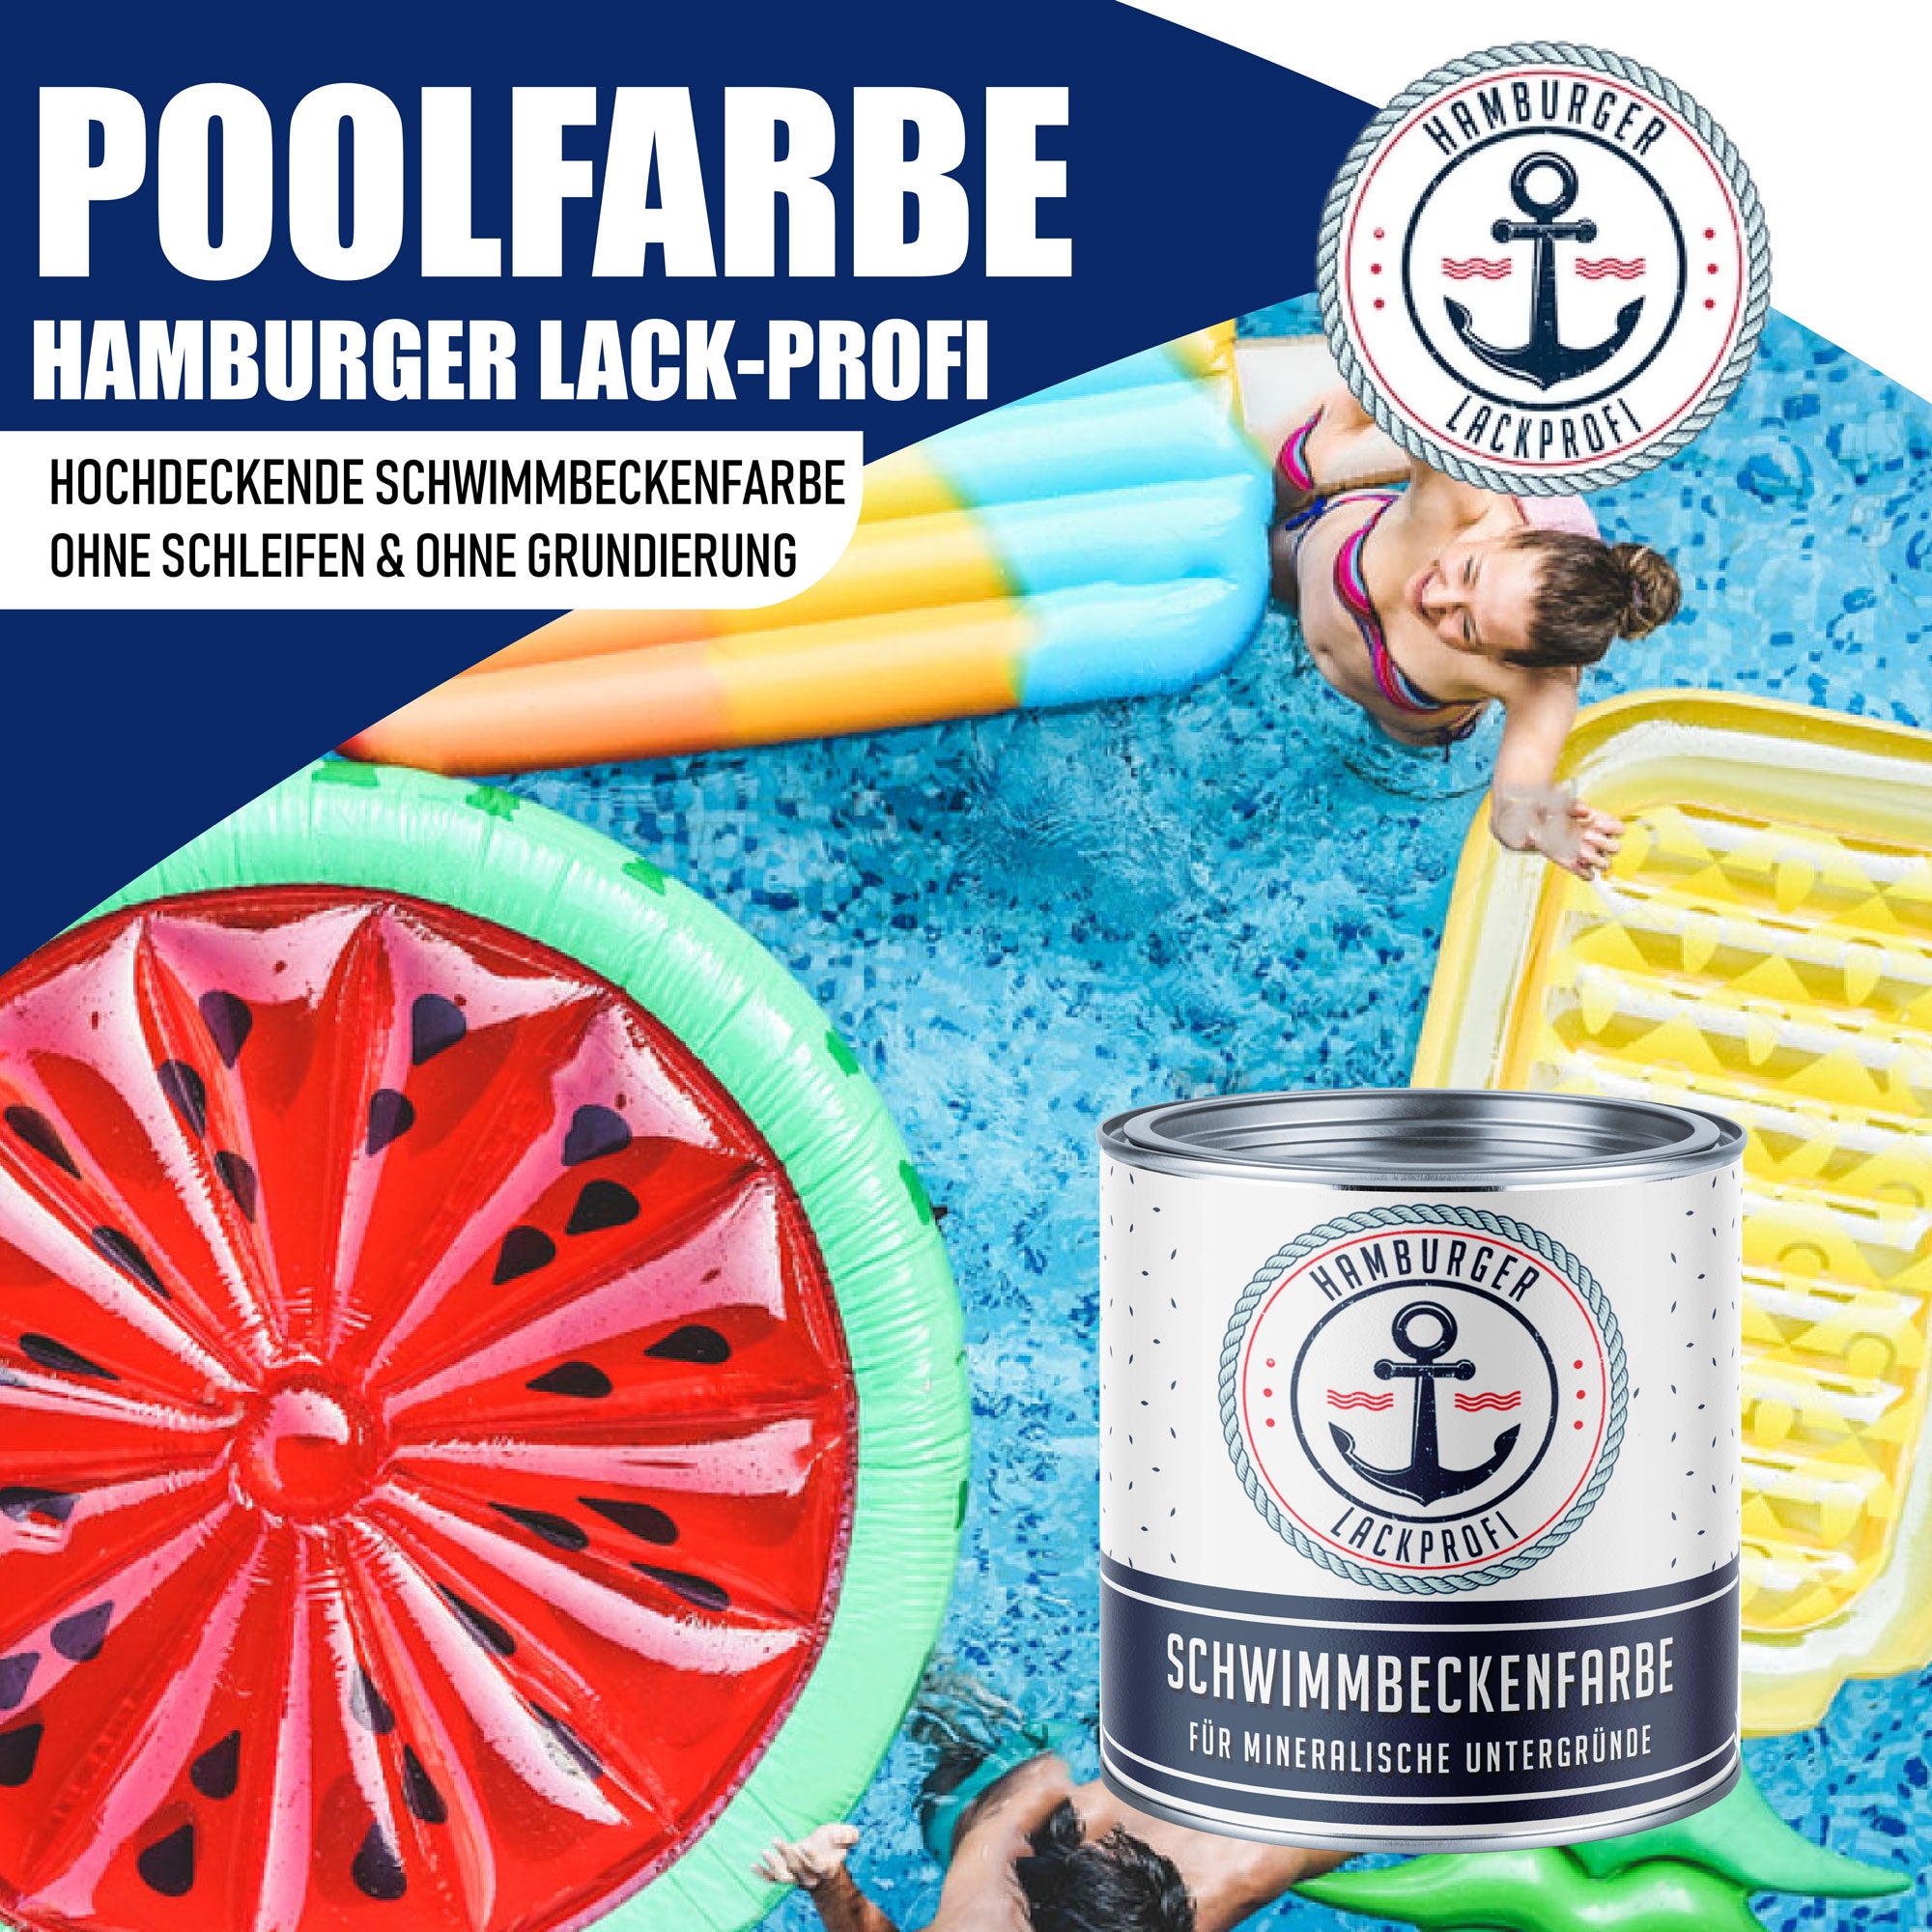 Hamburger Lack-Profi Schwimmbeckenfarbe Reinrot RAL 3028 - hochdeckende Poolfarbe